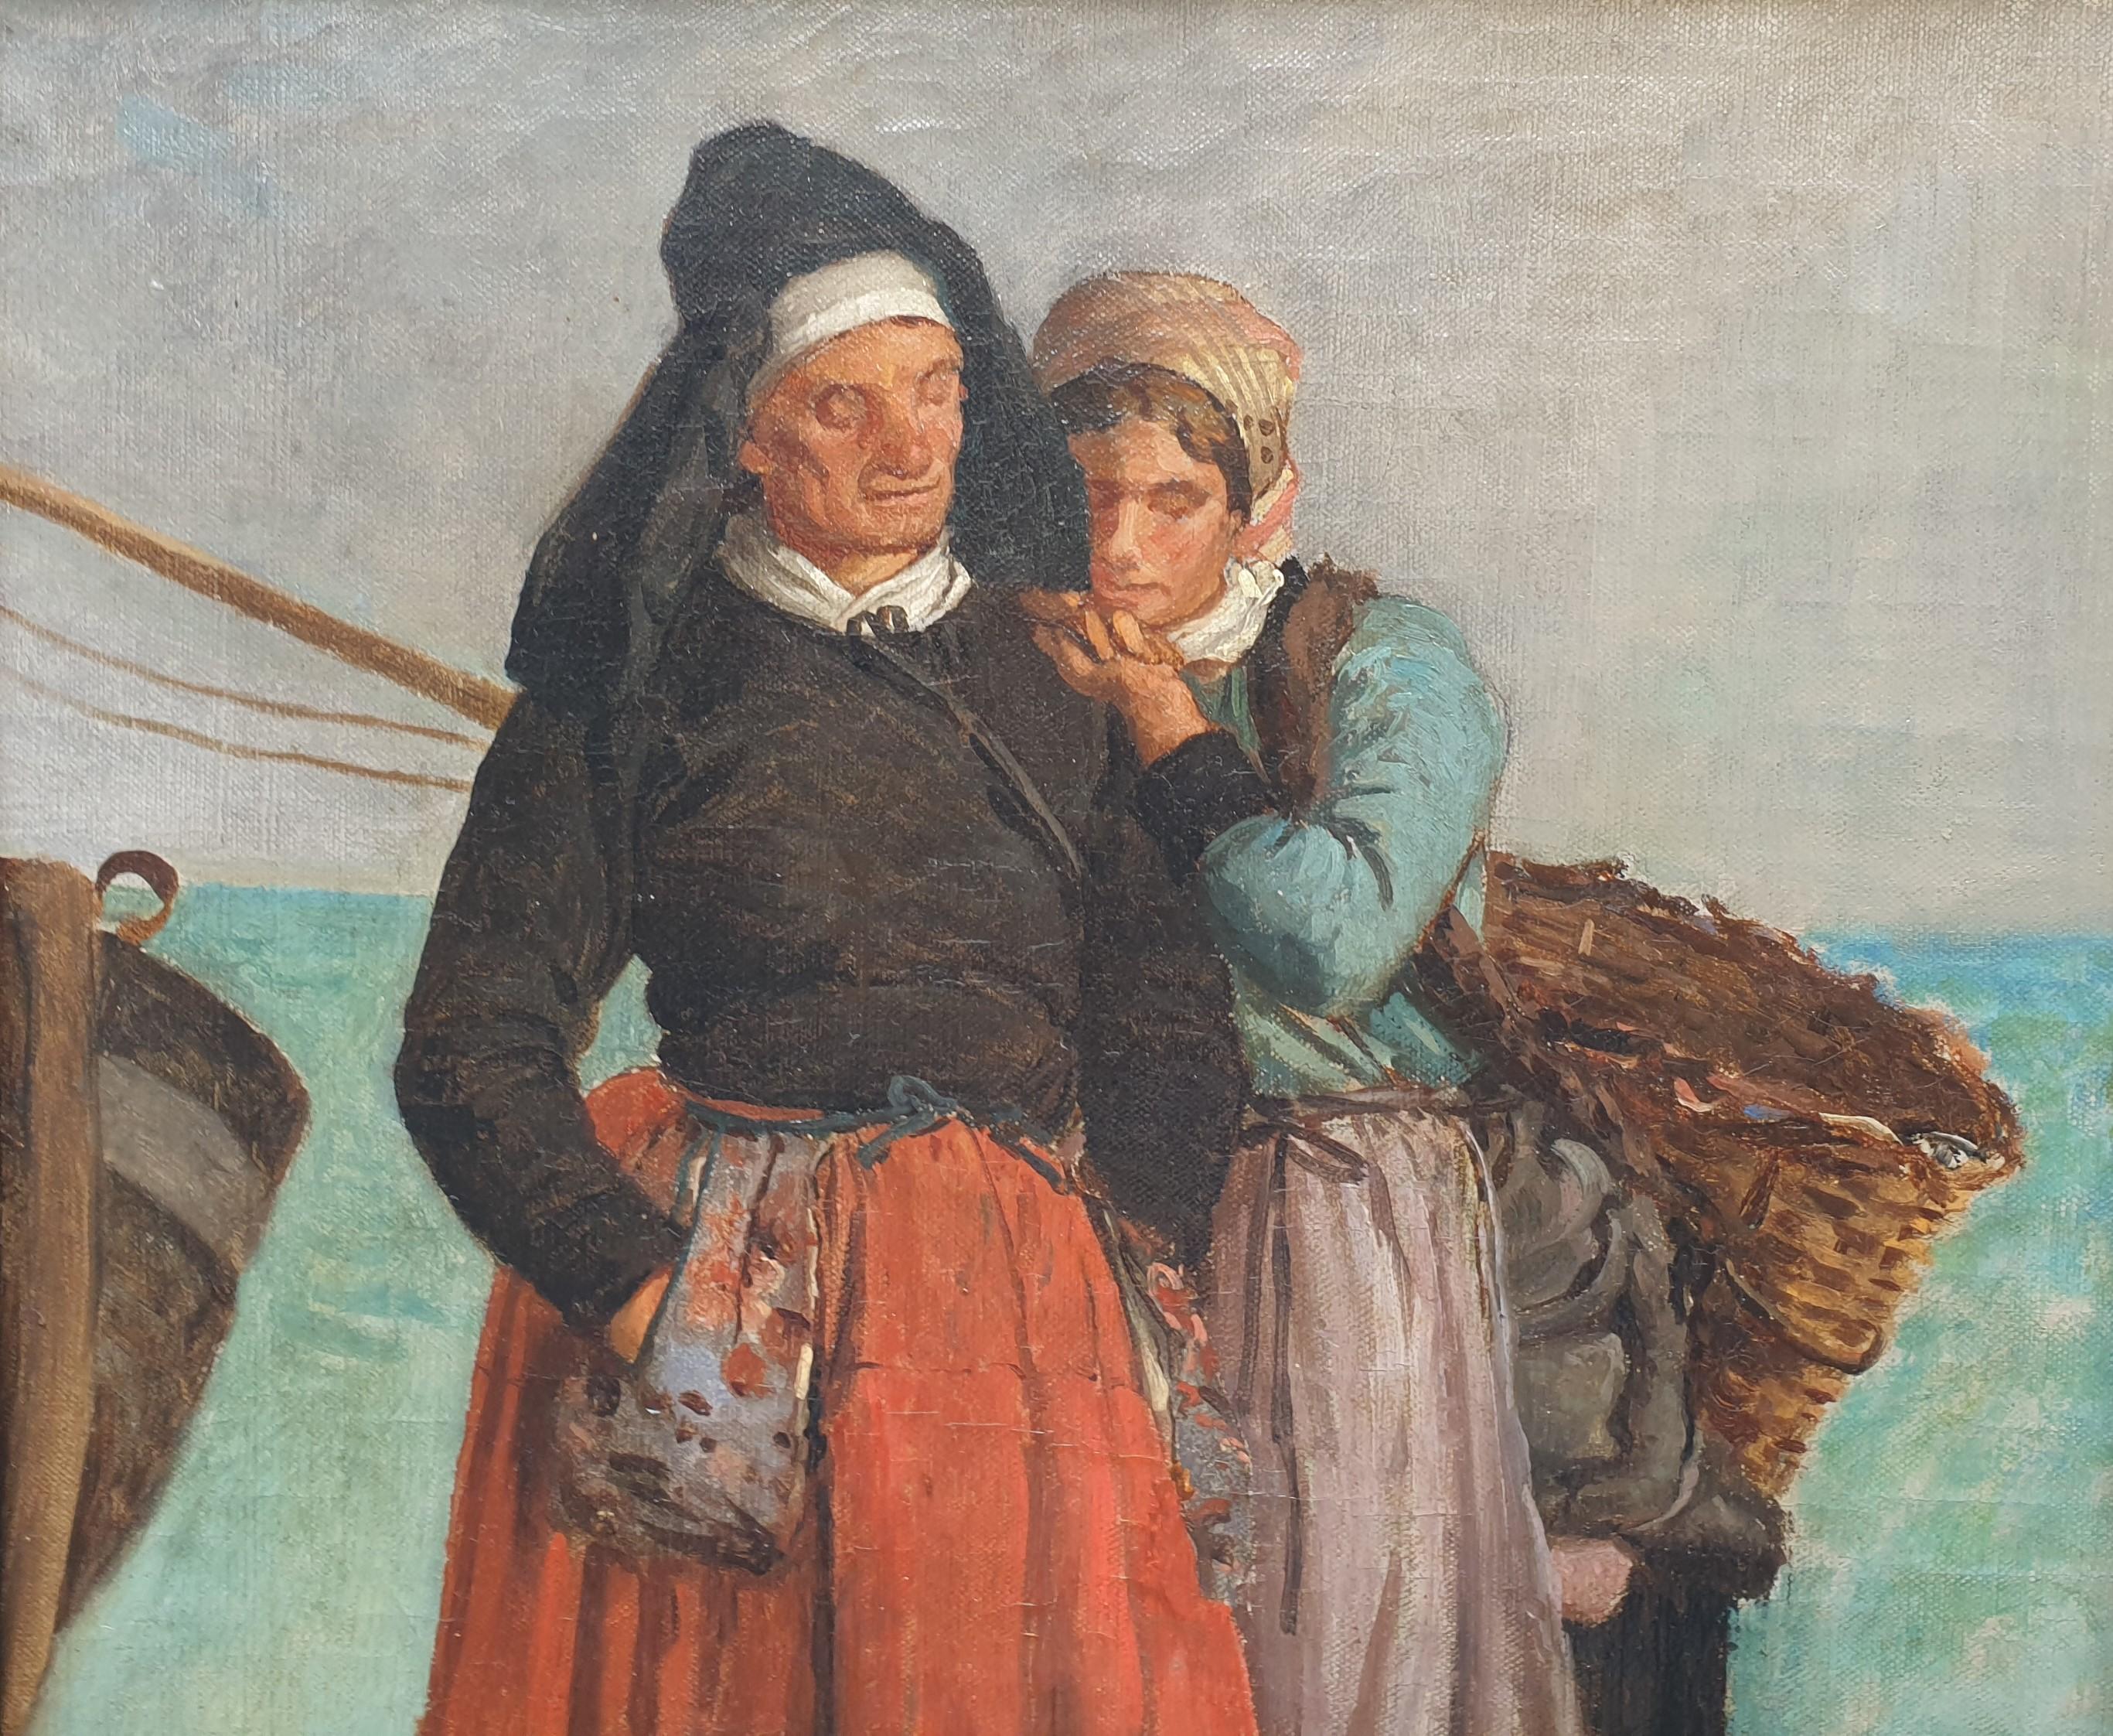 Pierre BILLET
Cantin (Nord), 1837 - Cantin, 1922
Huile sur toile
38,5 x 28,5 cm (48 x 36,5 cm avec le cadre)
Signé en bas à gauche 